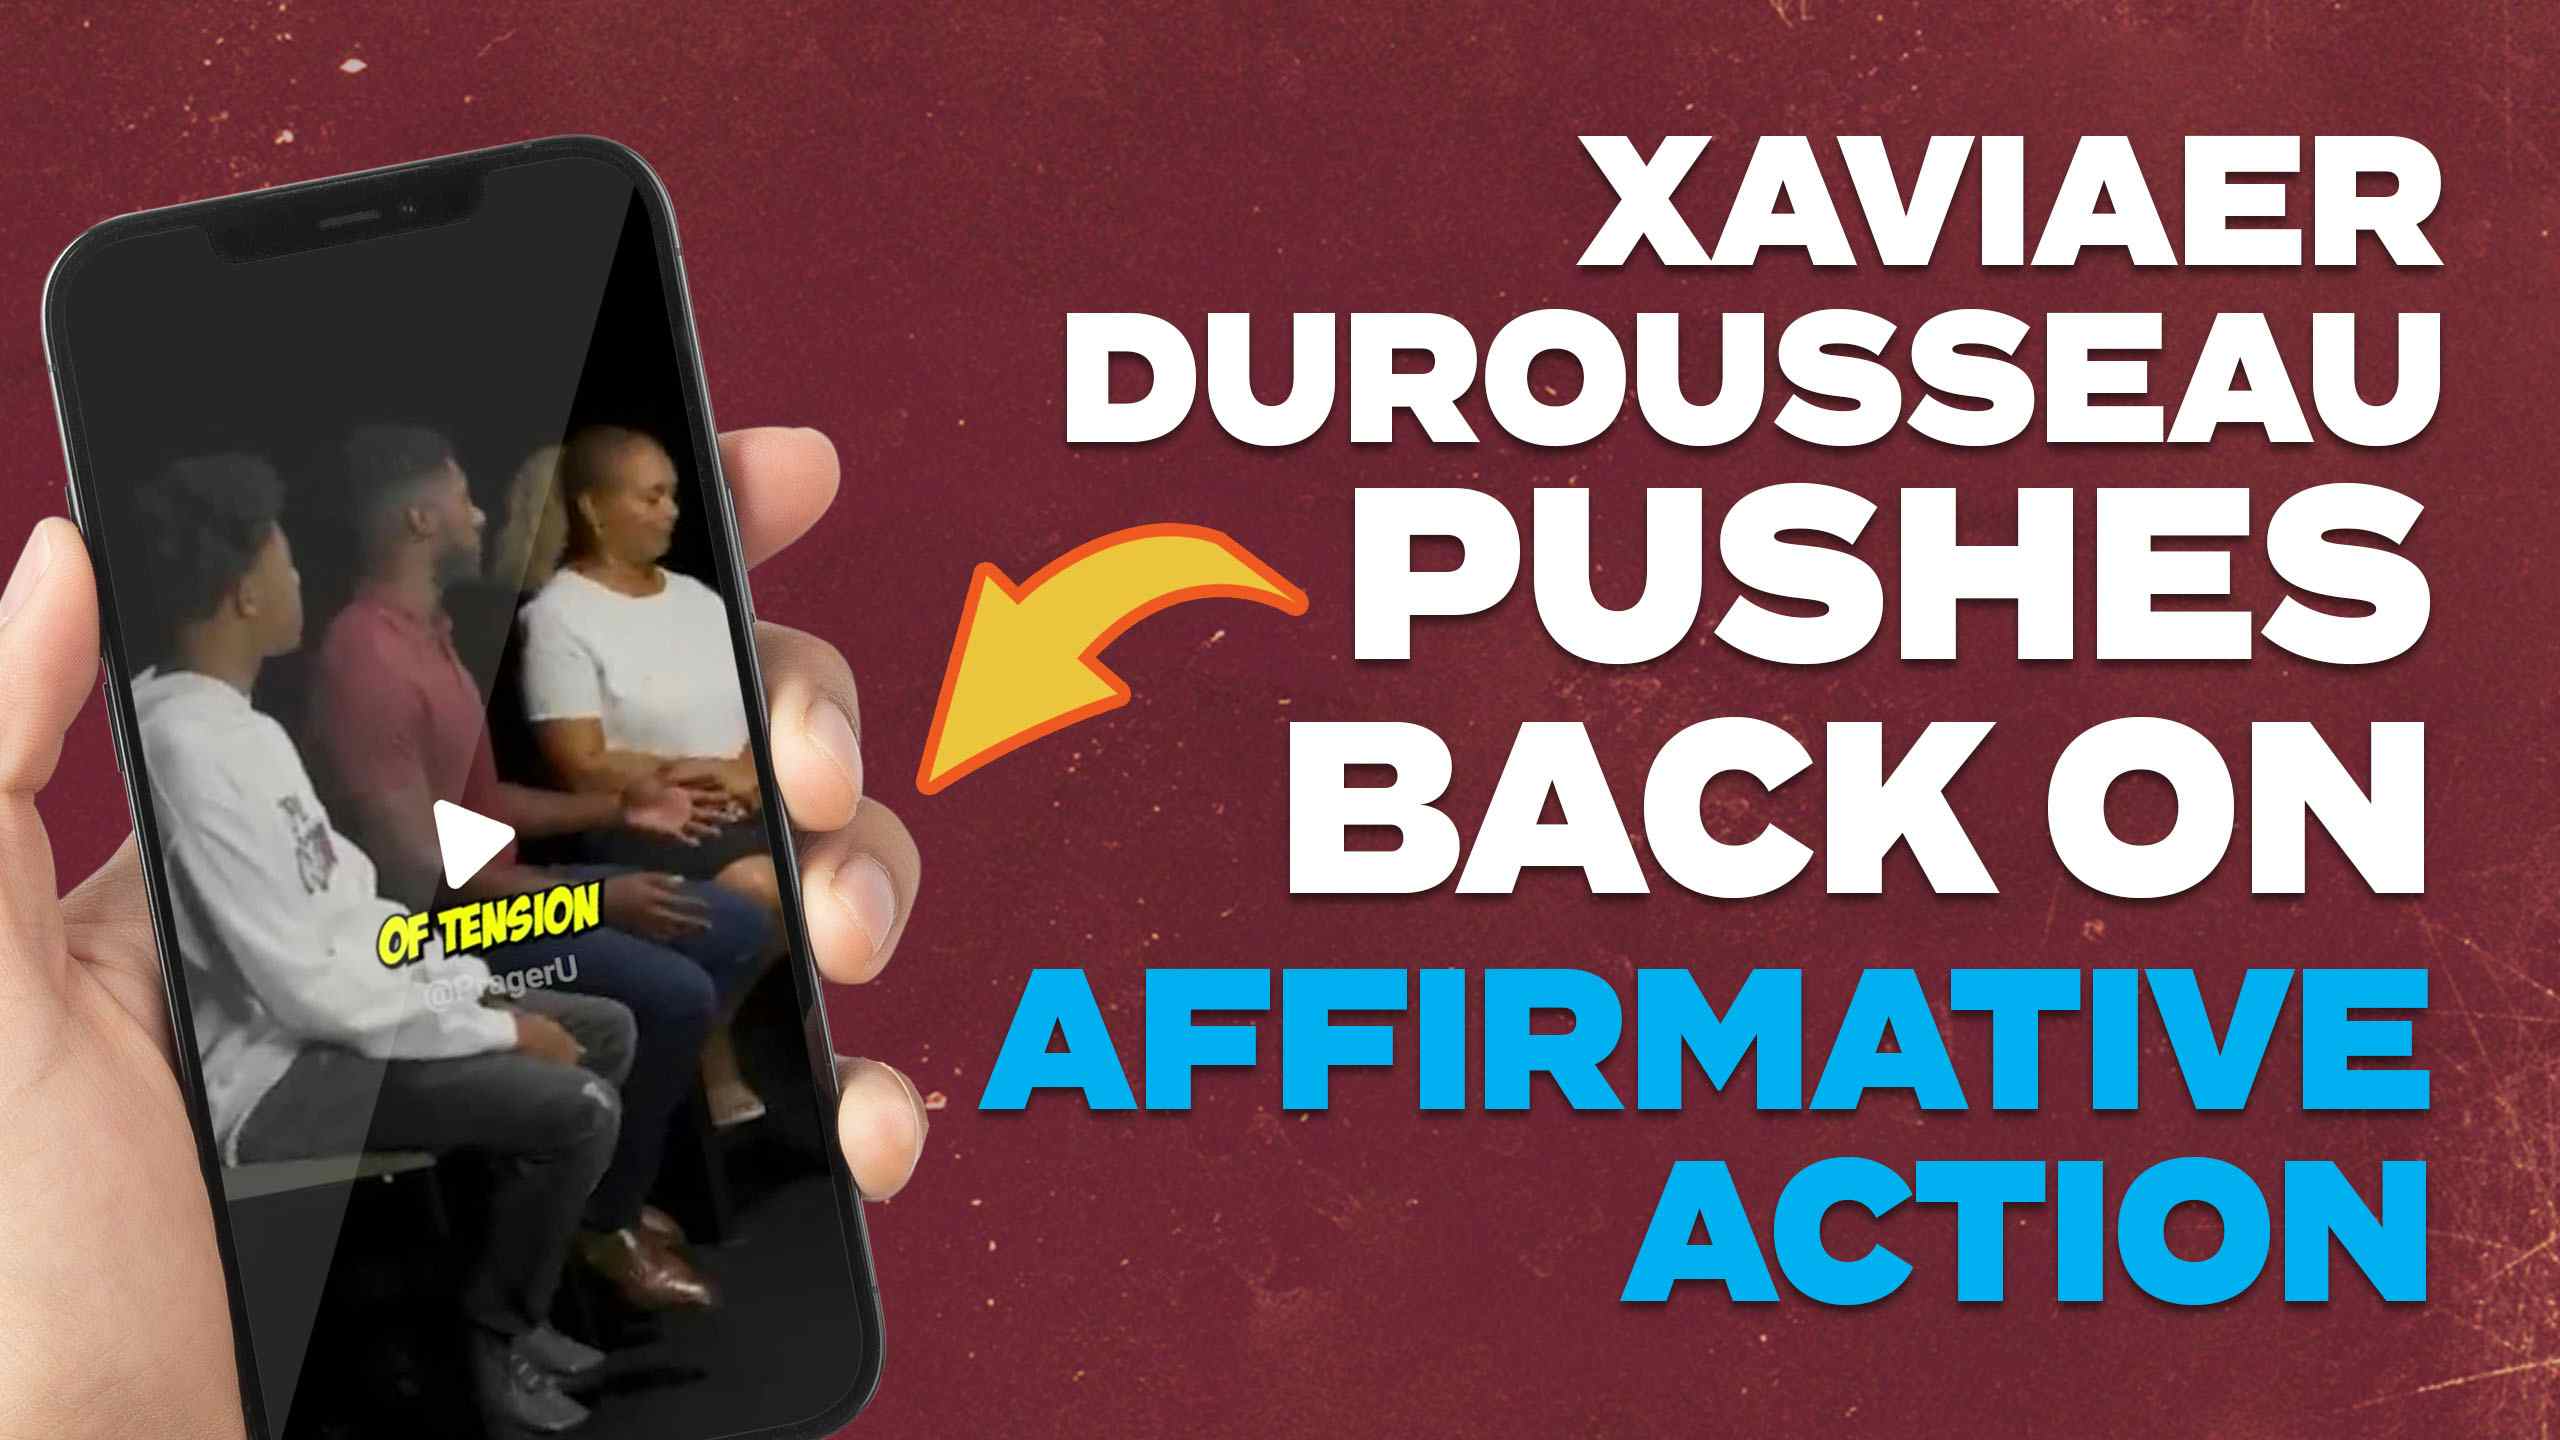 Xaviaer DuRousseau Pushes Back on Affirmative Action